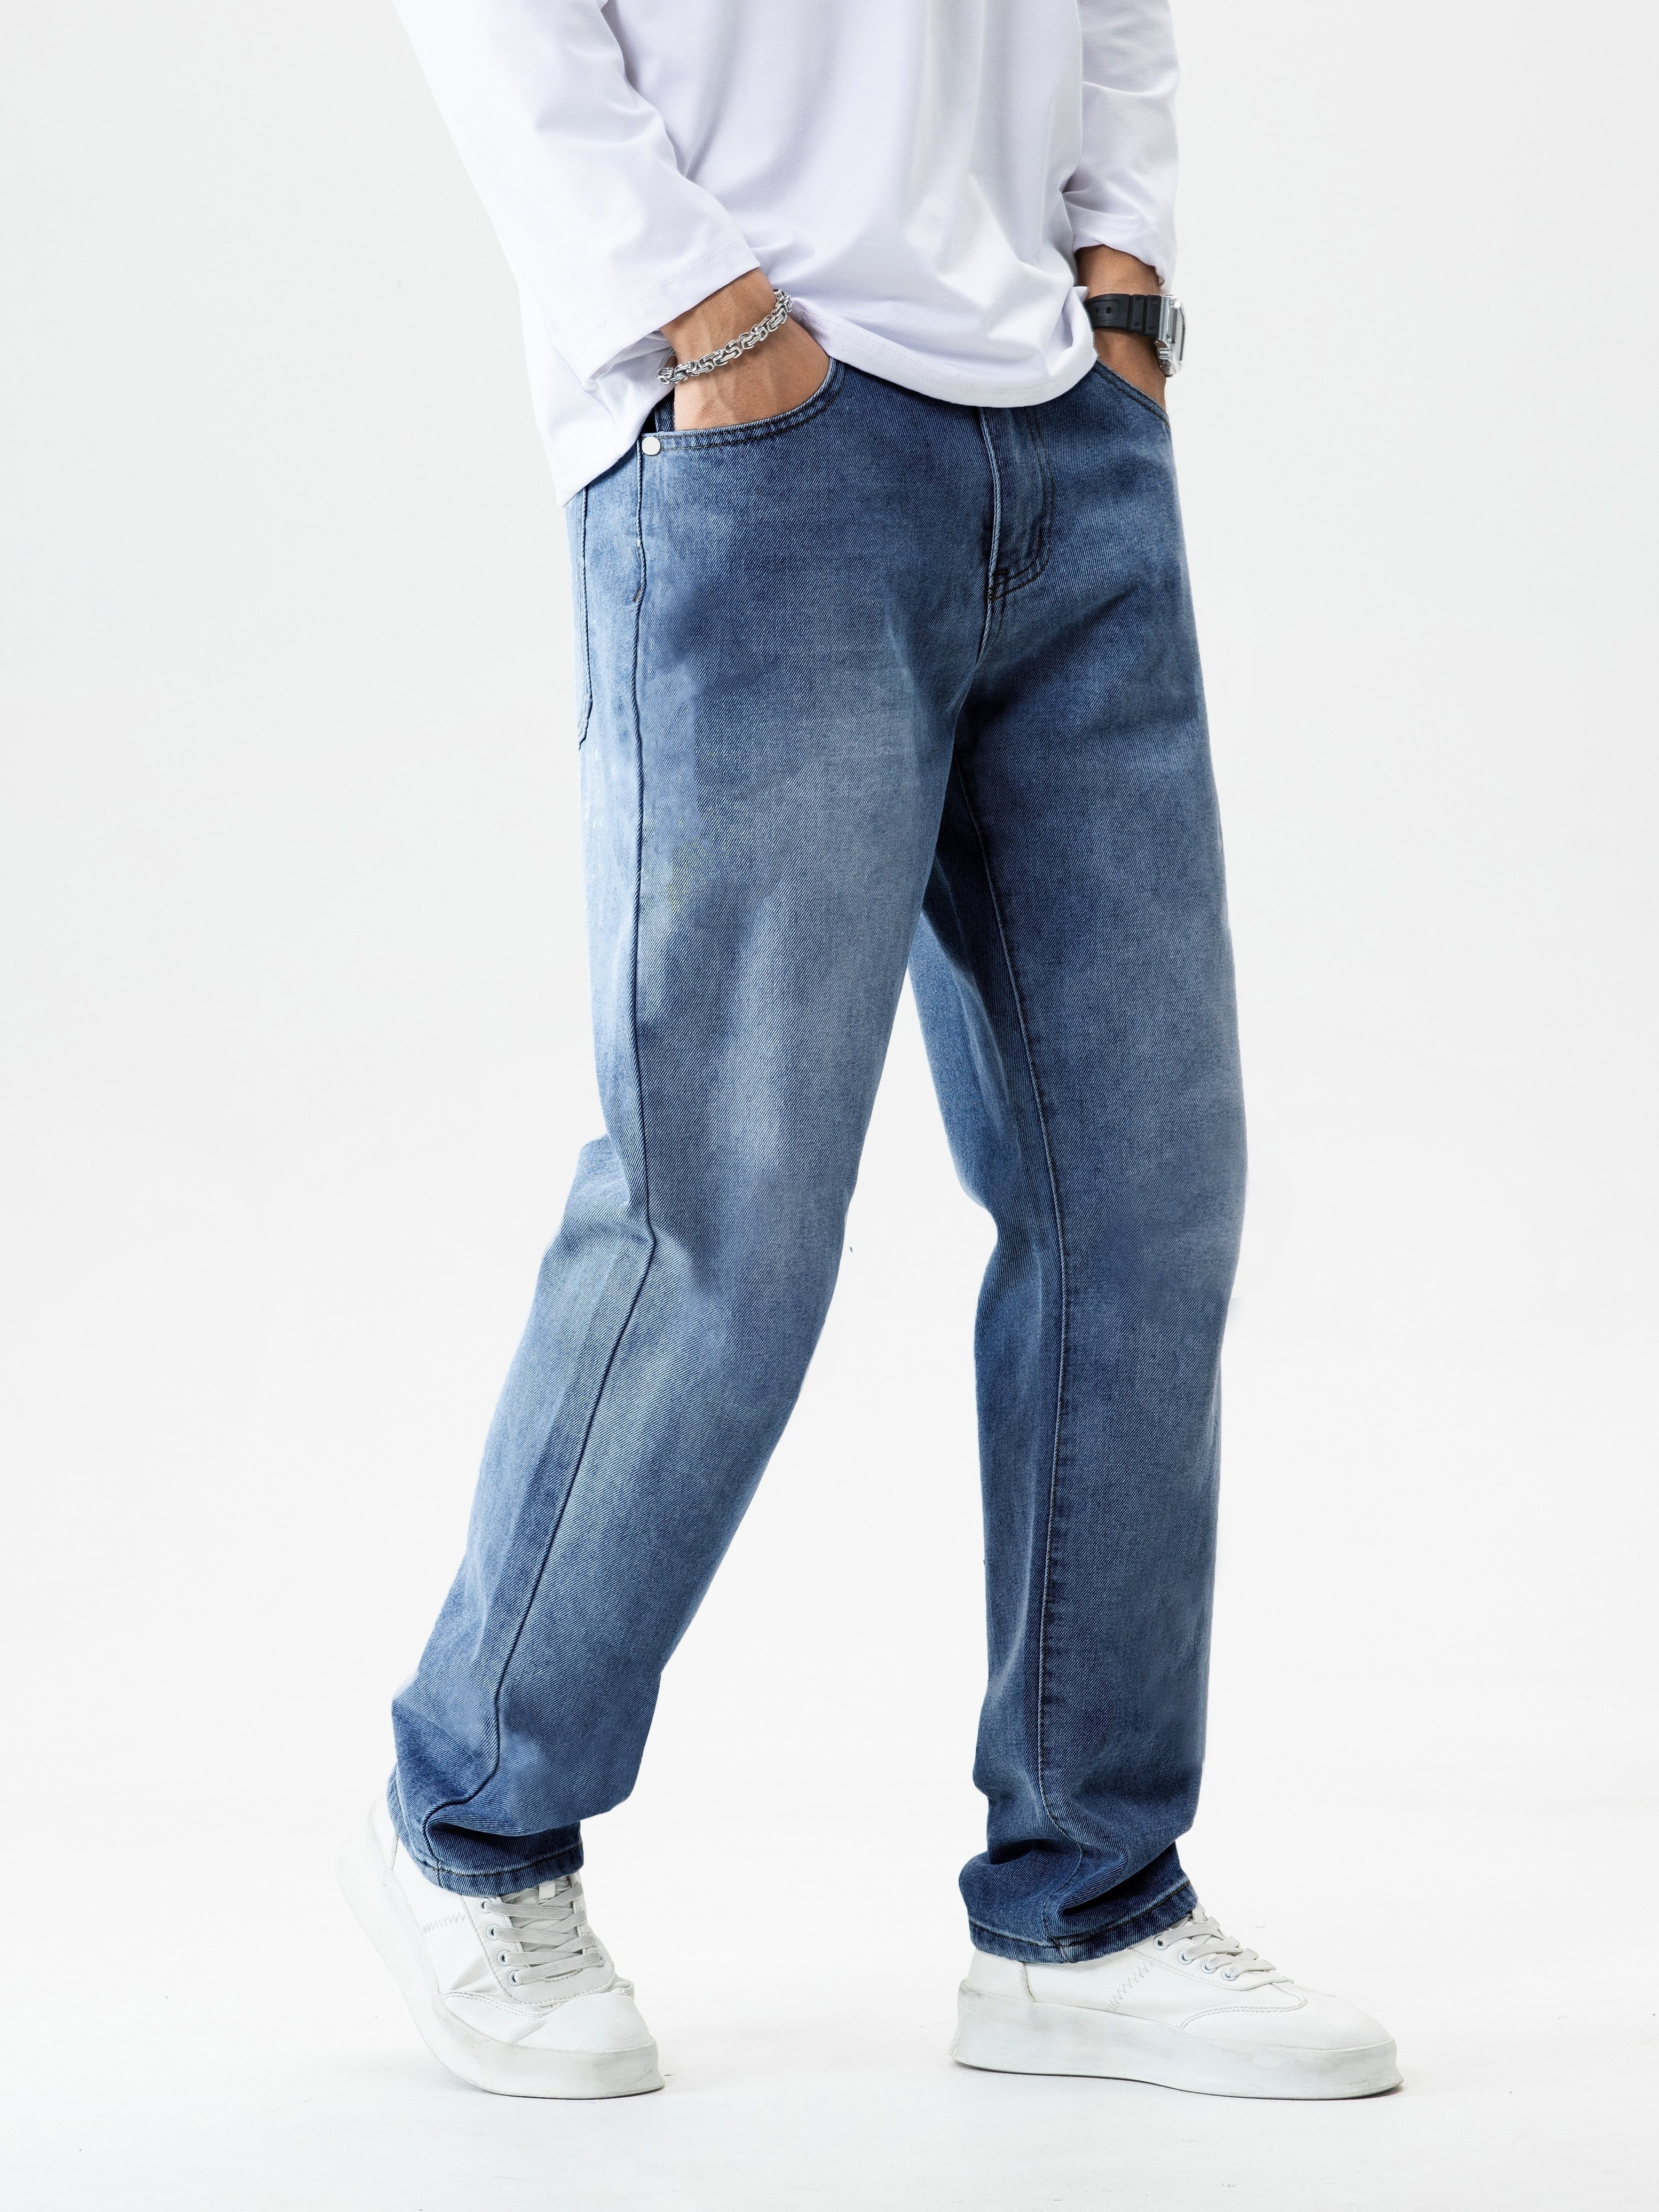 Джинсы свободного покроя классического дизайна, мужские повседневные джинсовые брюки в уличном стиле на все сезоны